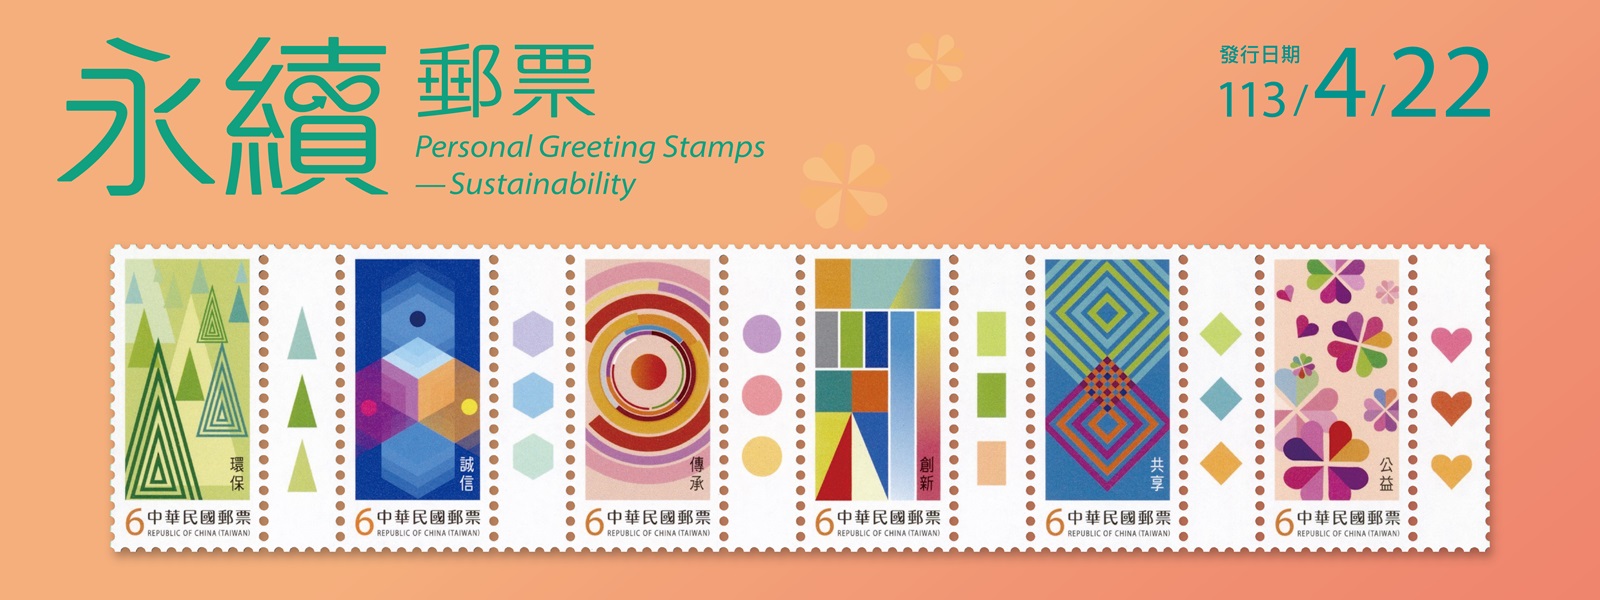 本套郵票以永續發展理念「環保、誠信、傳承、創新、共享、公益」為主題，圖案採幾何元素及鮮明色彩為設計，適合個人、企業傳達永續發展之精神，促進社會共融。